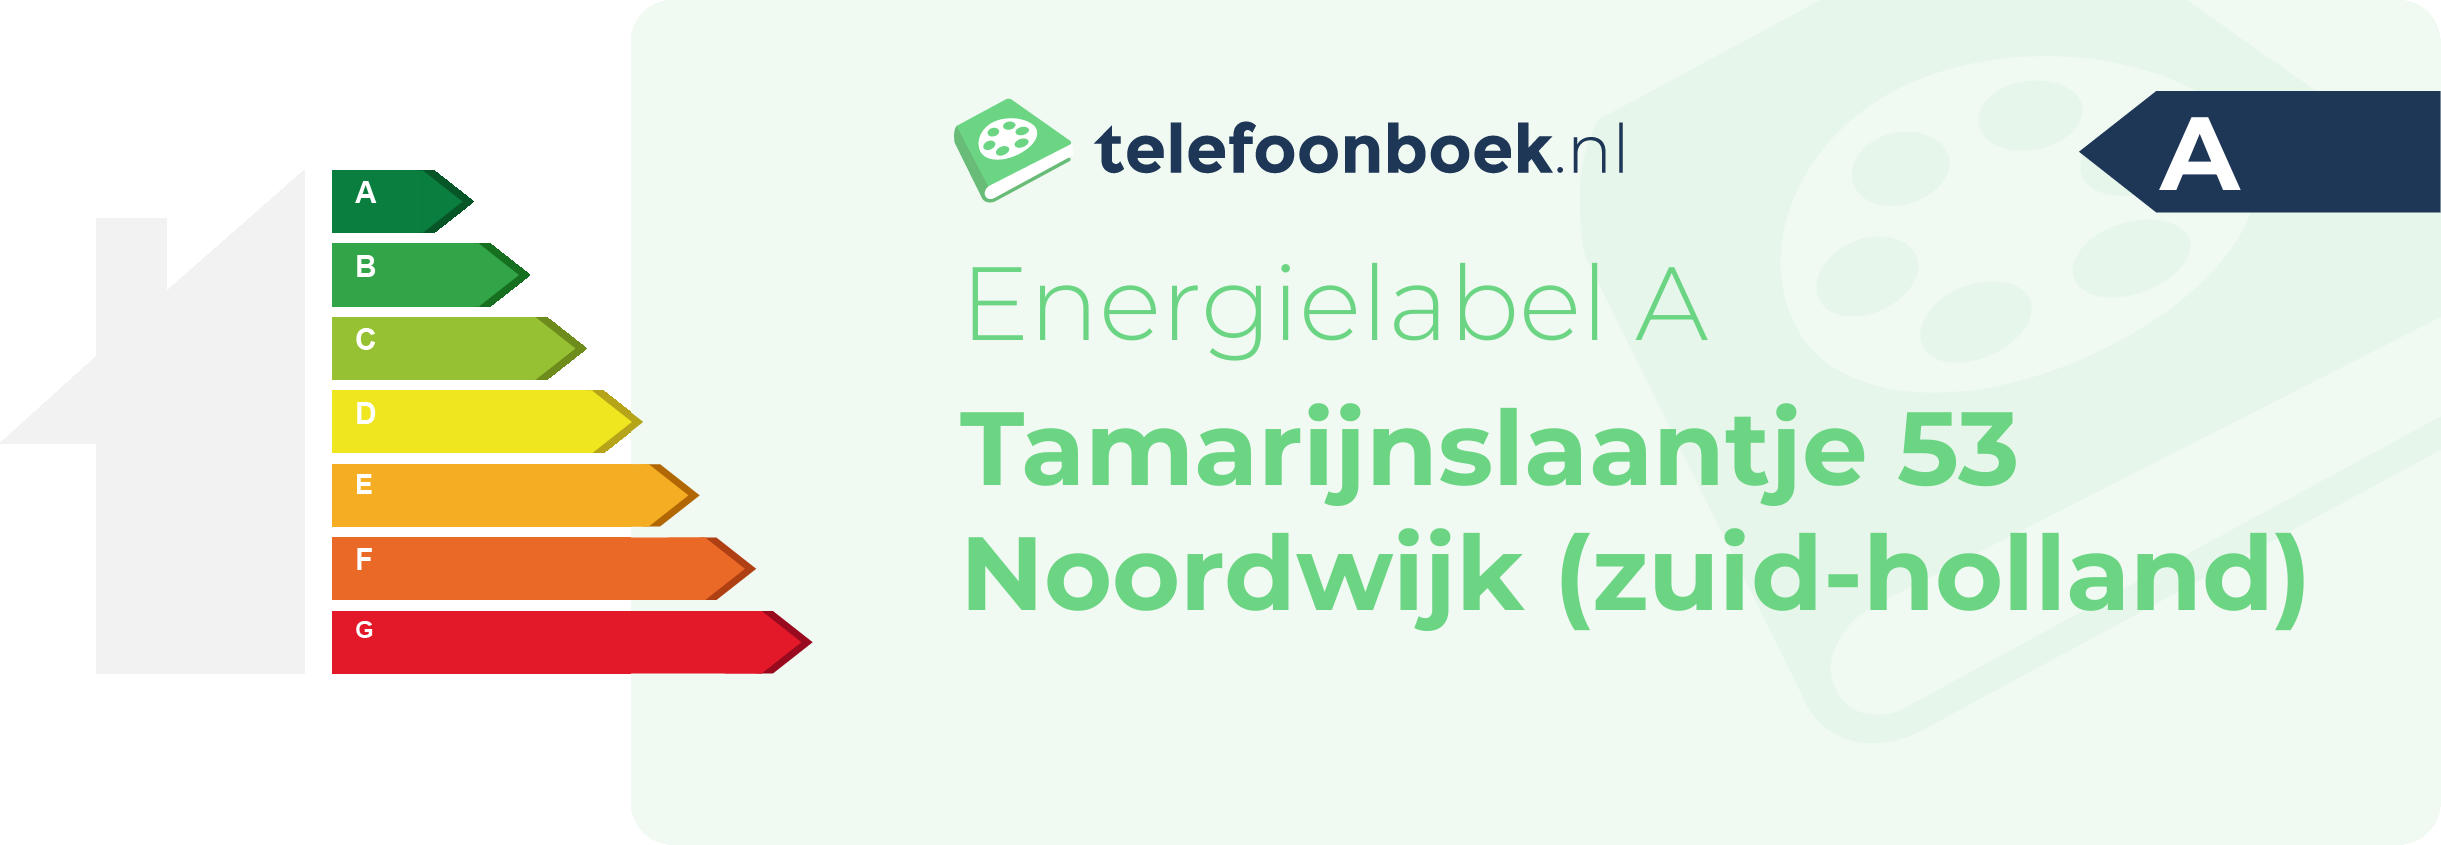 Energielabel Tamarijnslaantje 53 Noordwijk (Zuid-Holland)